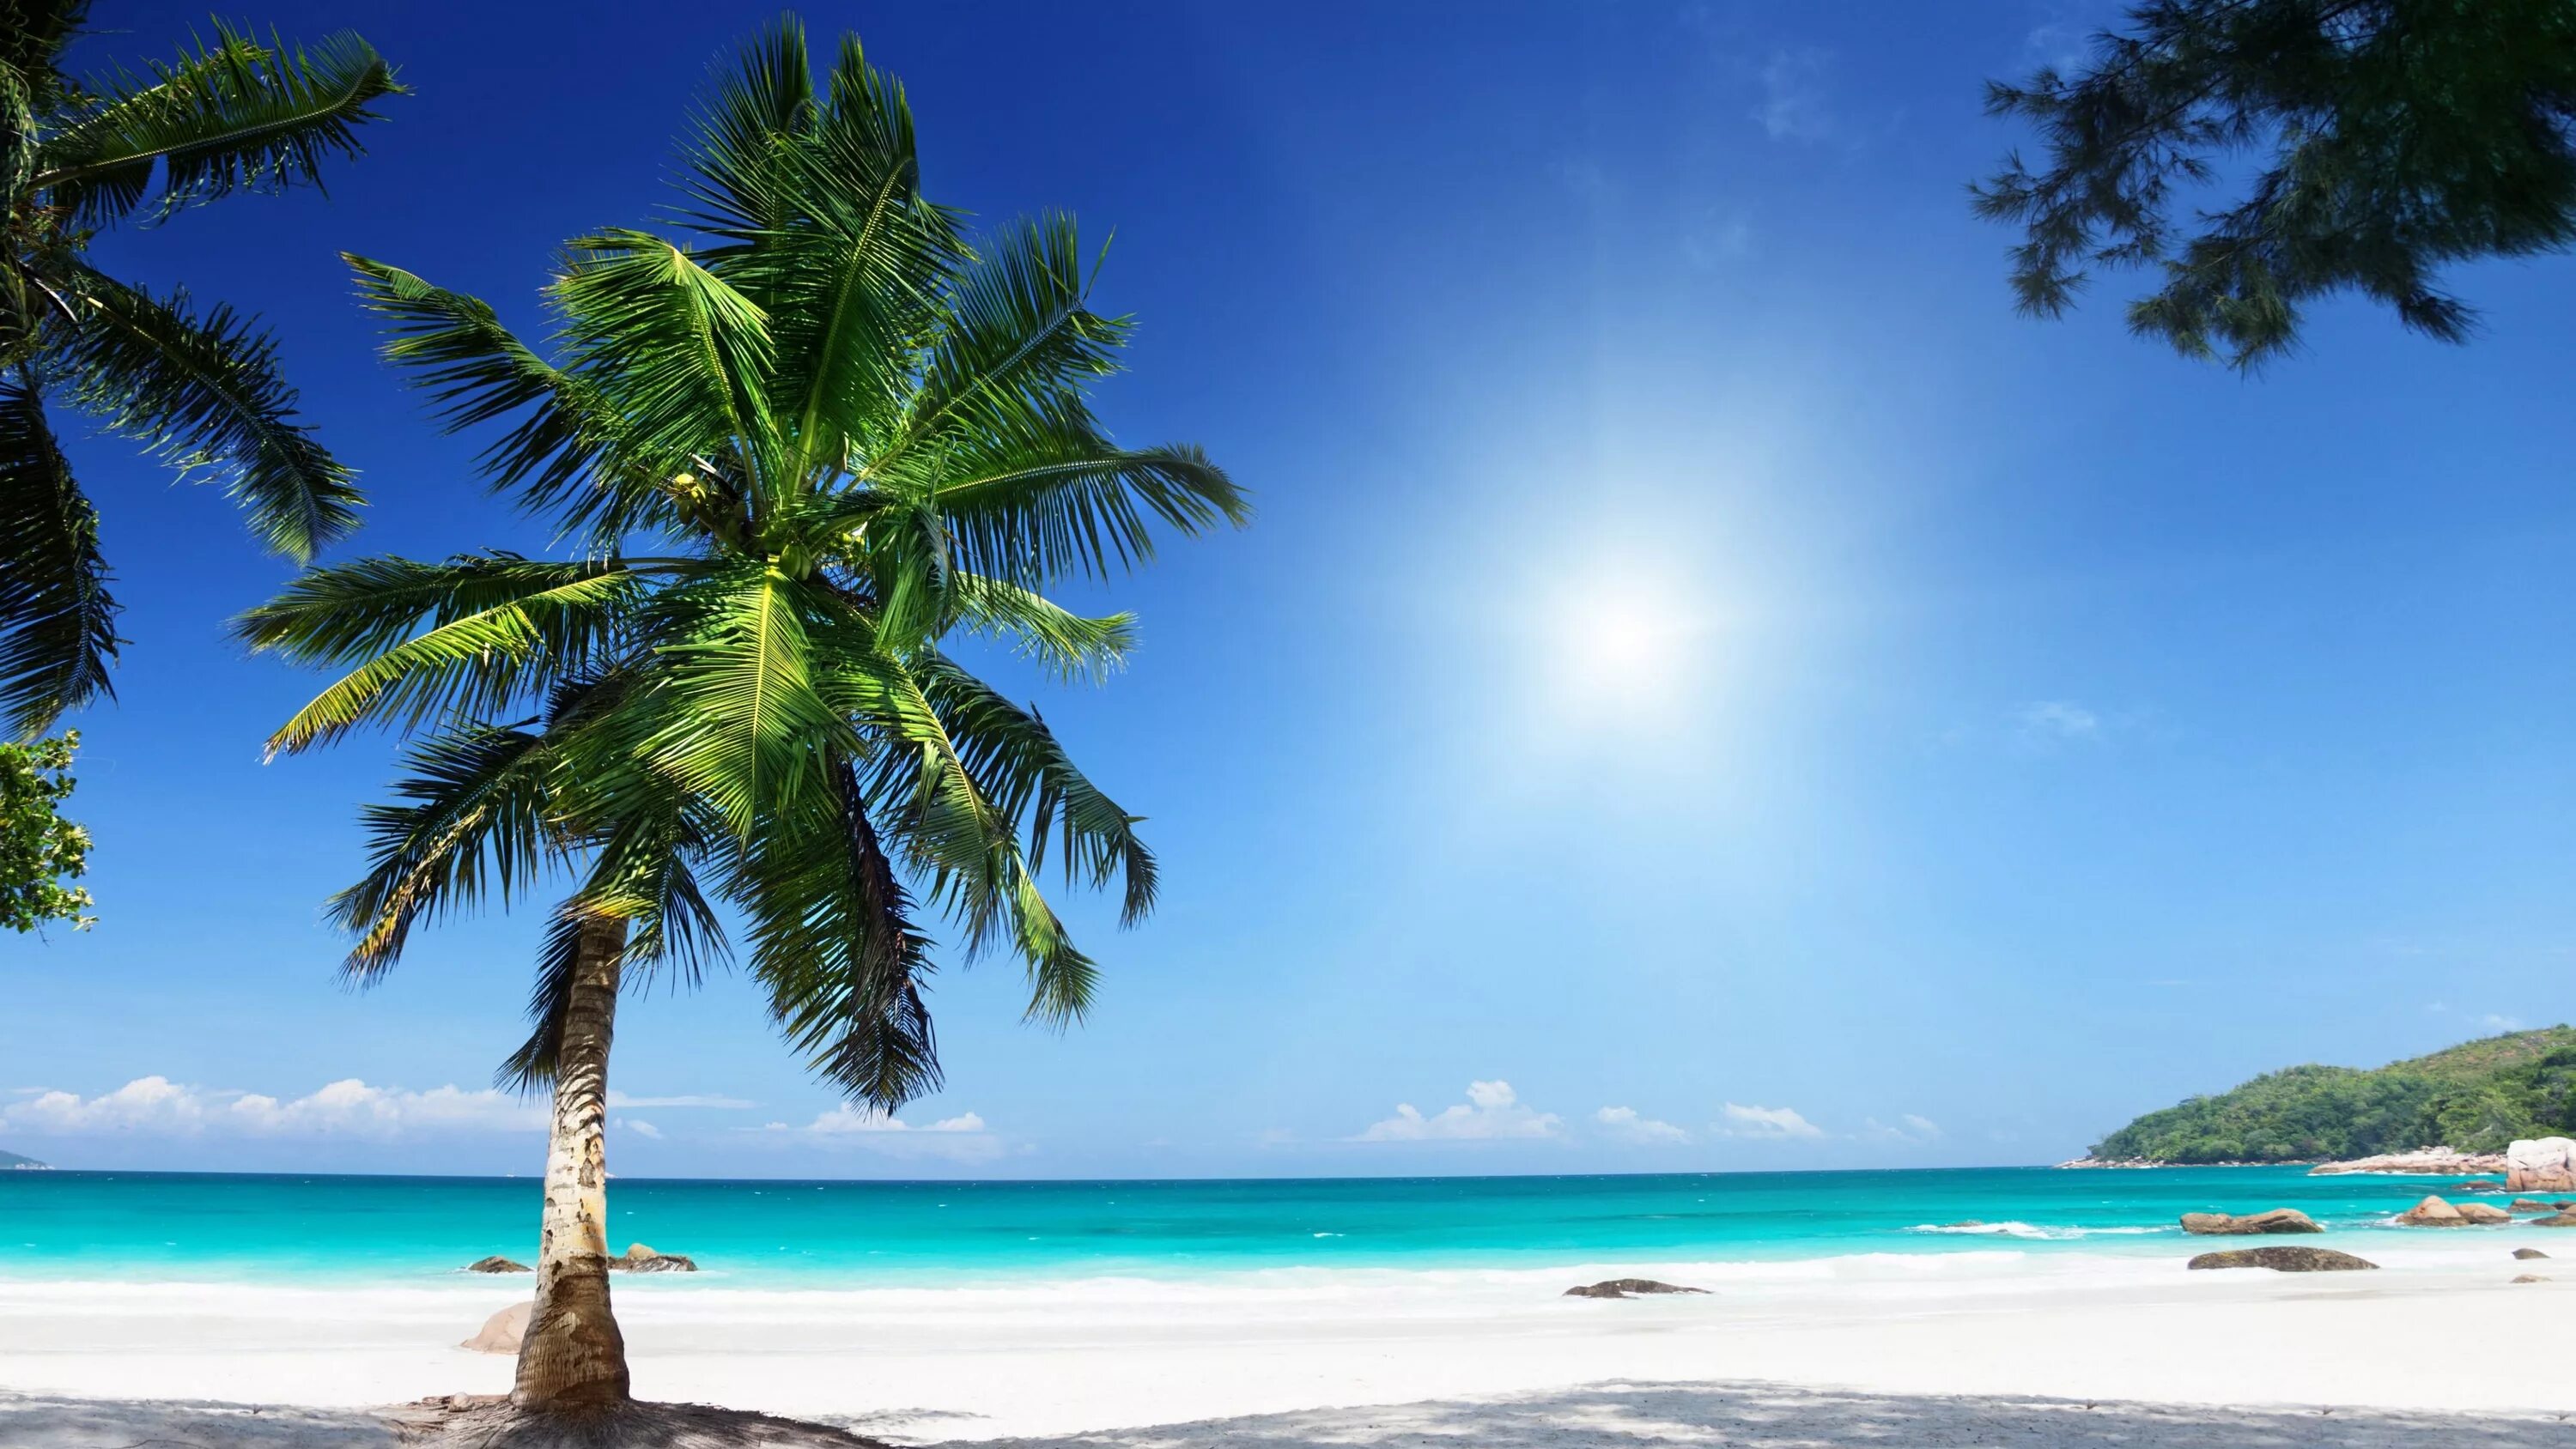 Пляж Сансет Бич Сейшелы. Праслин Сейшелы. Пляж с пальмами. Пальмы и океан.